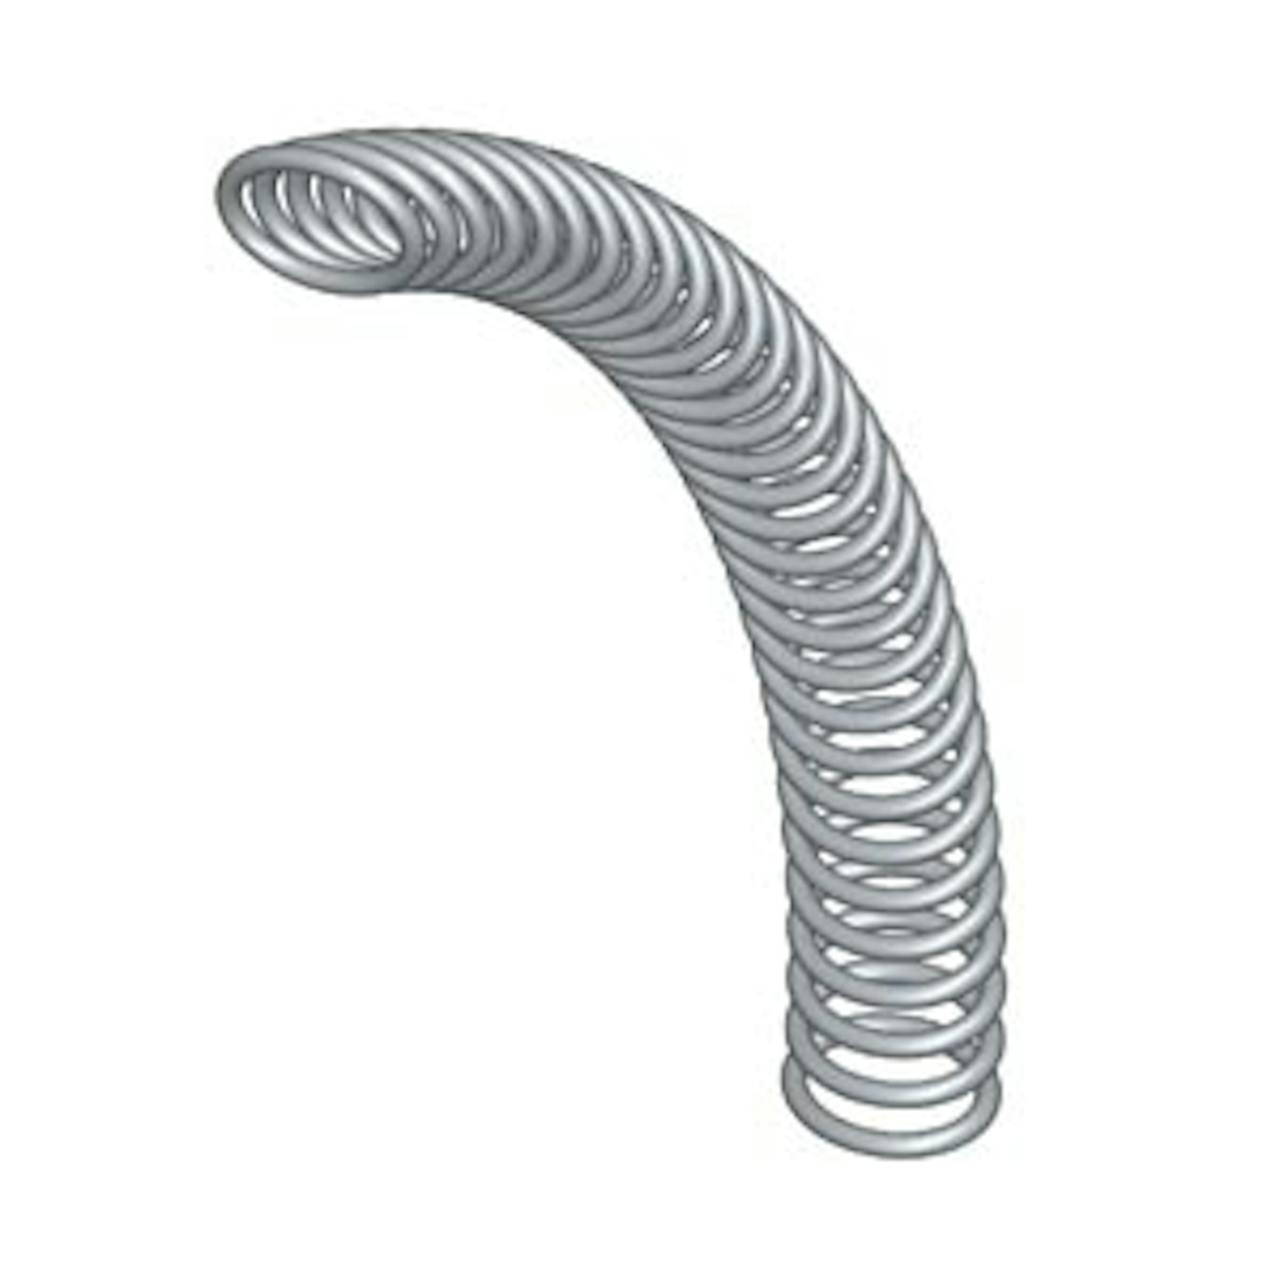 slant coil spring